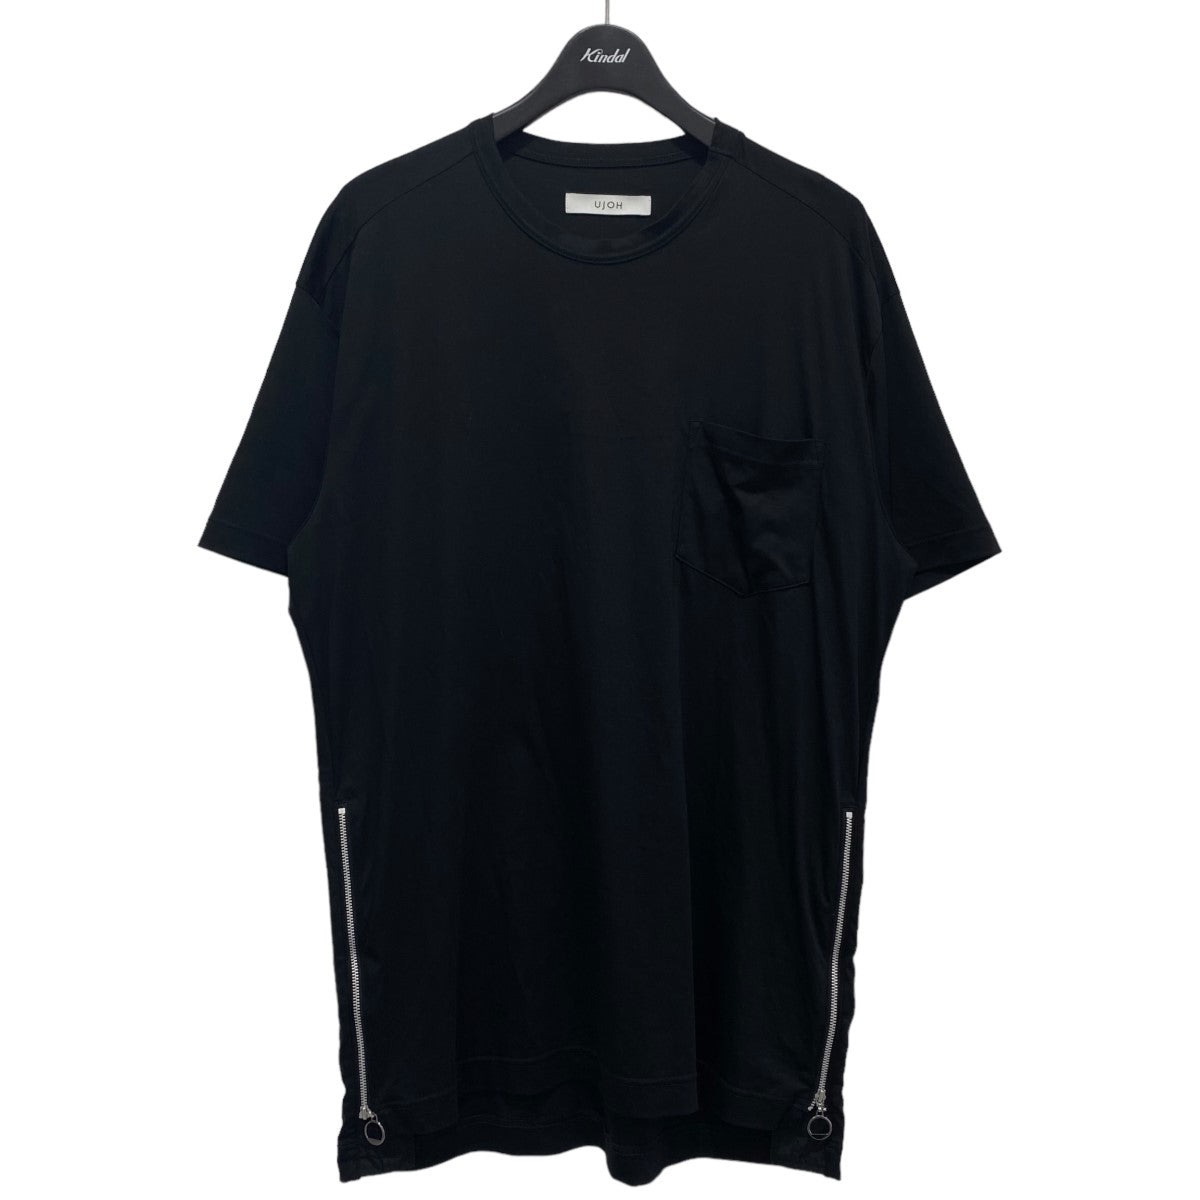 Ujoh(ウジョー) サイドジップTシャツ M781-T52-002 ブラック サイズ 14 